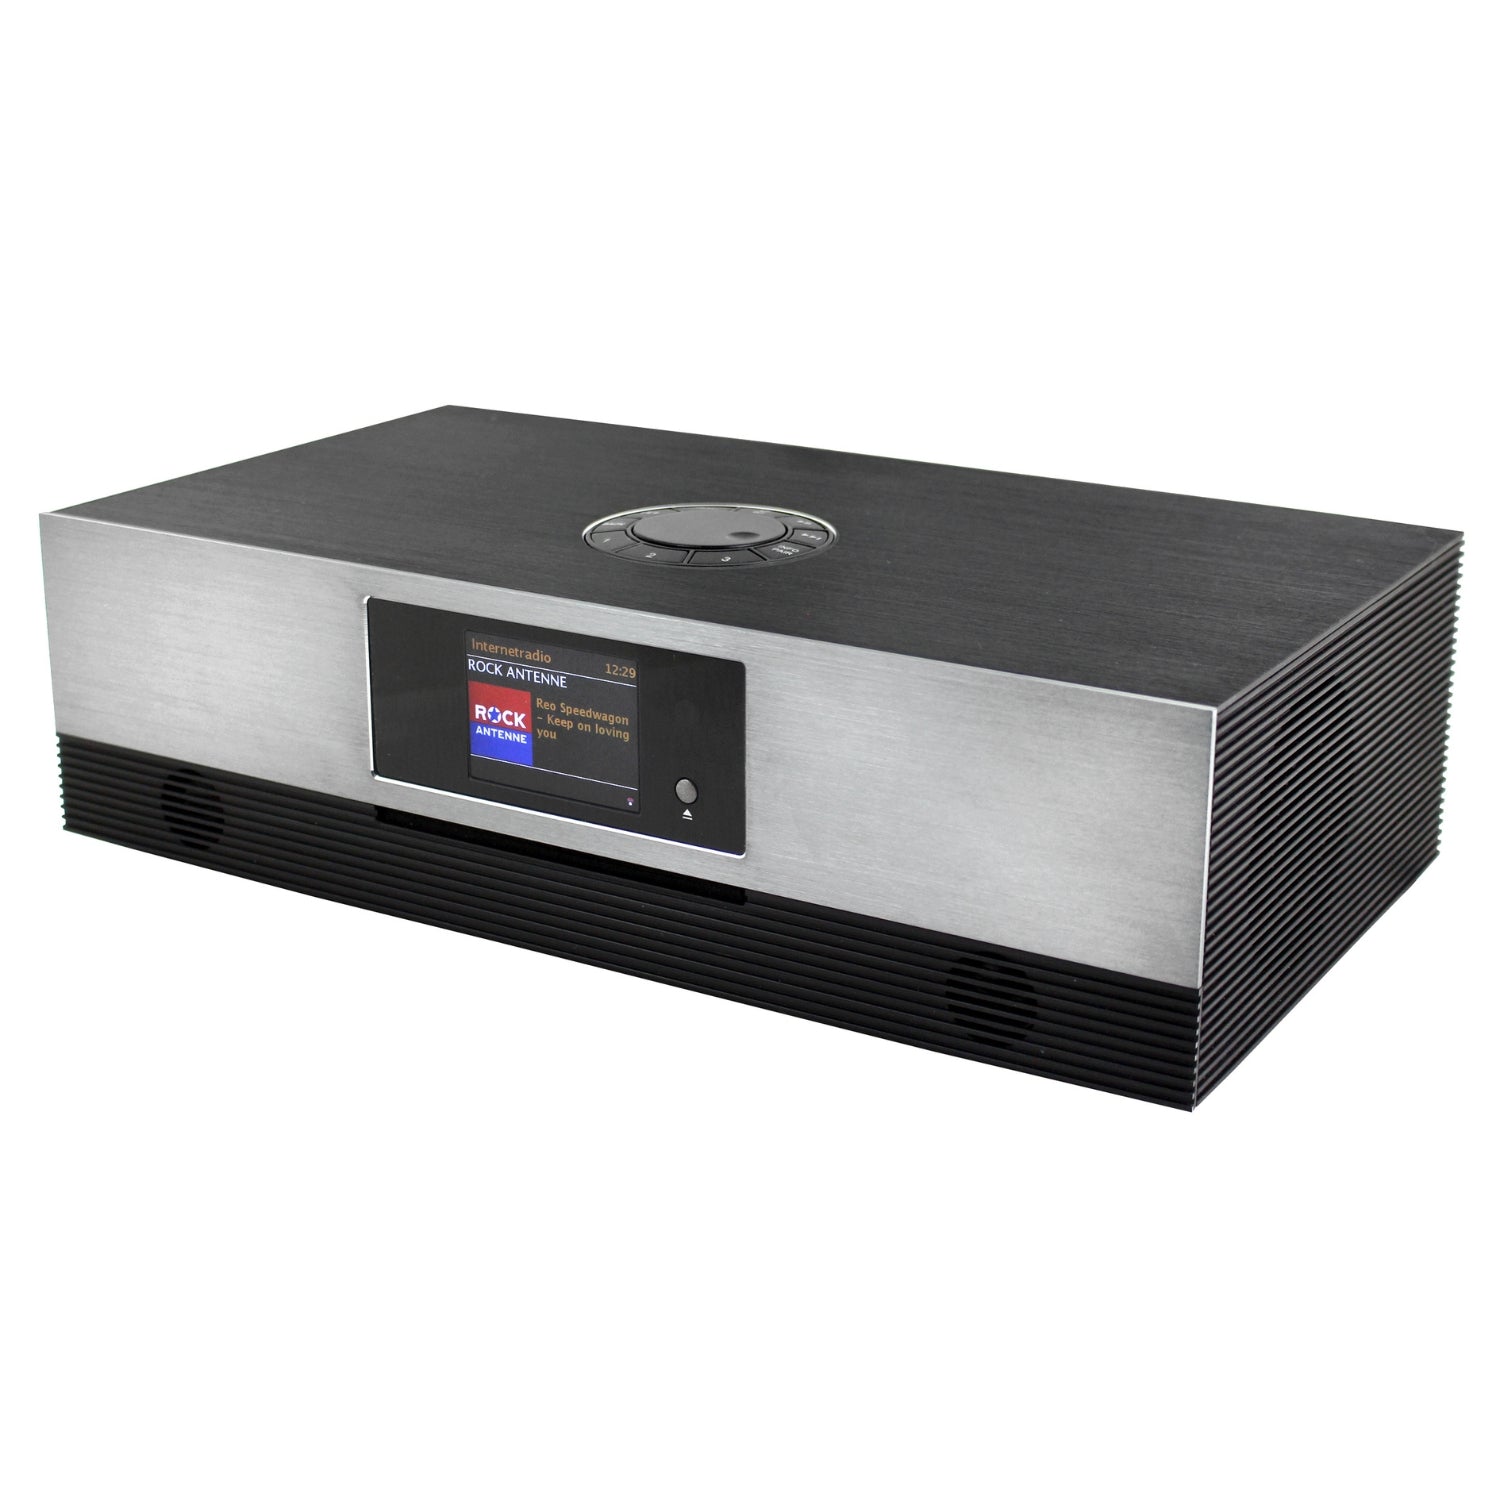 Soundmaster Eliteline ICD2080SW Stereoanlage Kompaktanlage mit Internet DAB+ UKW-Radio CD Spotify-Connect und App-Steuerung